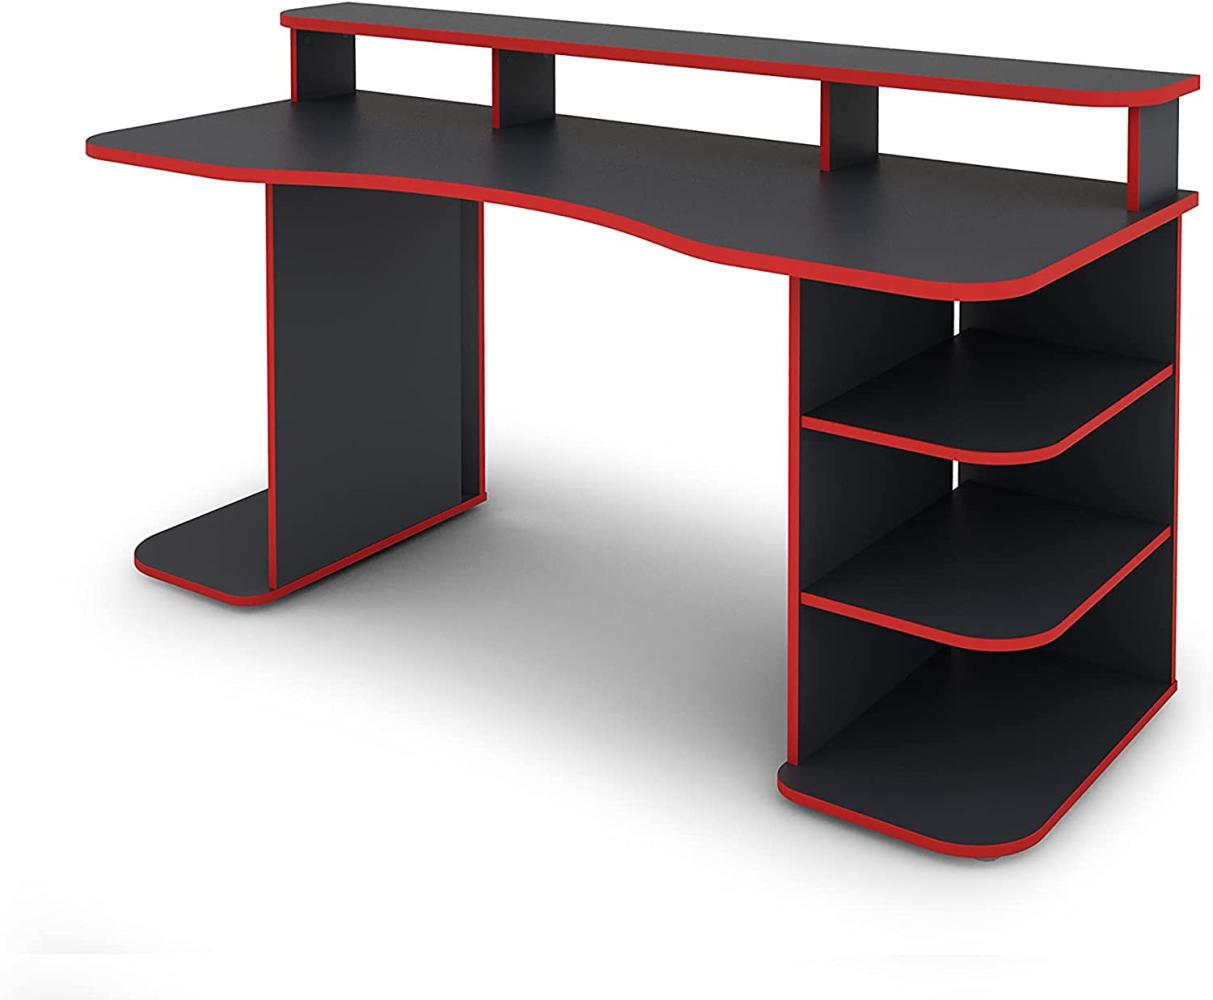 byLIVING Schreibtisch FINN / Gaming-Tisch in Anthrazit mit Kanten in Rot / Mit viel Stauraum und großer Tischplatte / Computer-Tisch / PC / Arbeits-Tisch / 160x93x65cm (BxHxT) Bild 1